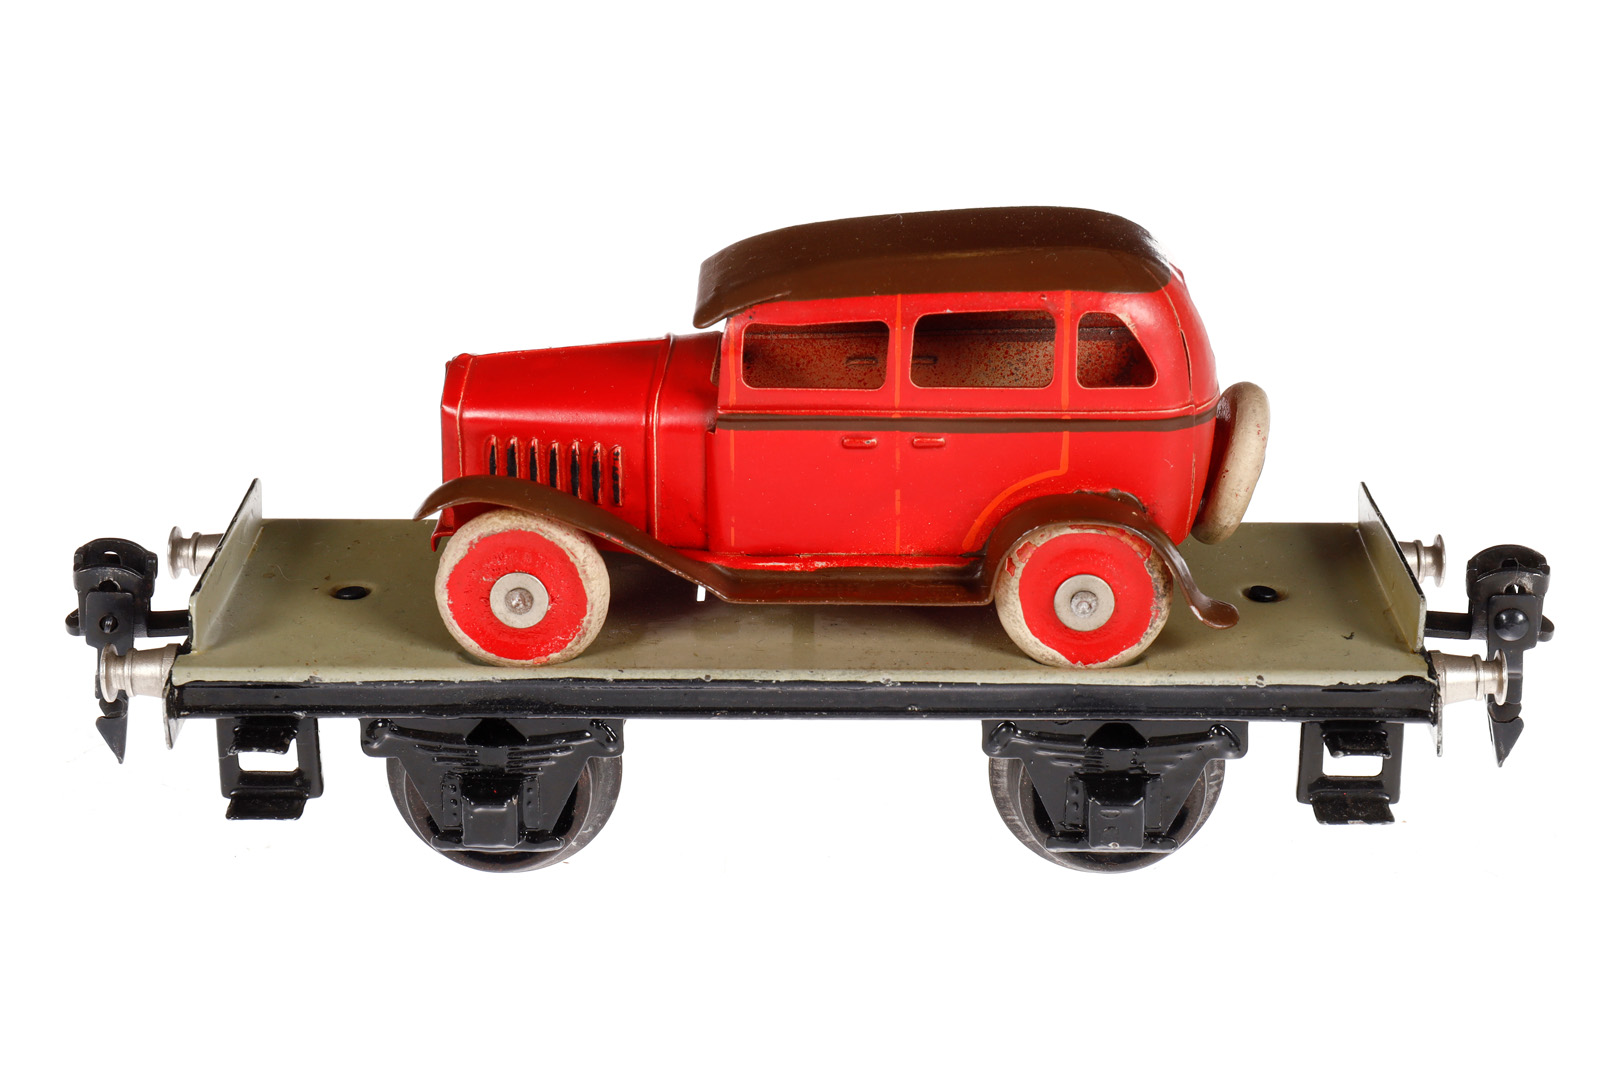 Märklin Plattformwagen 1766, Spur 0, HL, mit Blechauto (rot/braun), LS und gealterter Lack, kleine